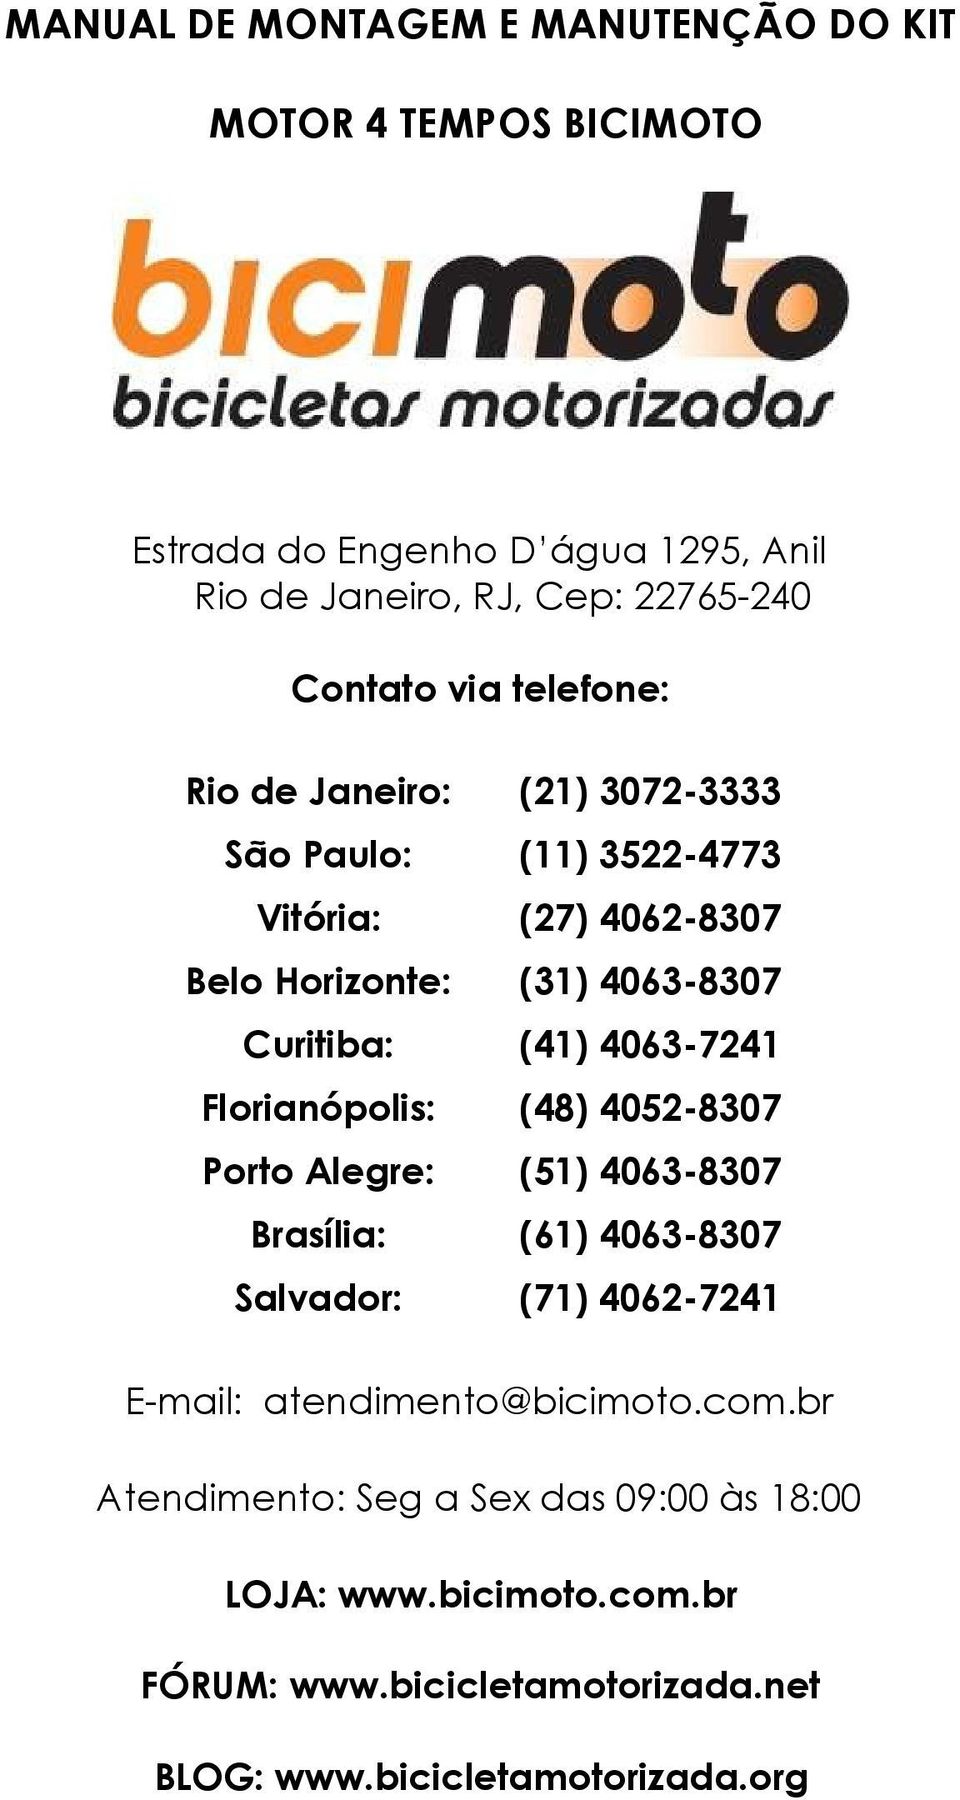 4063-7241 Florianópolis: (48) 4052-8307 Porto Alegre: (51) 4063-8307 Brasília: (61) 4063-8307 Salvador: (71) 4062-7241 E-mail: